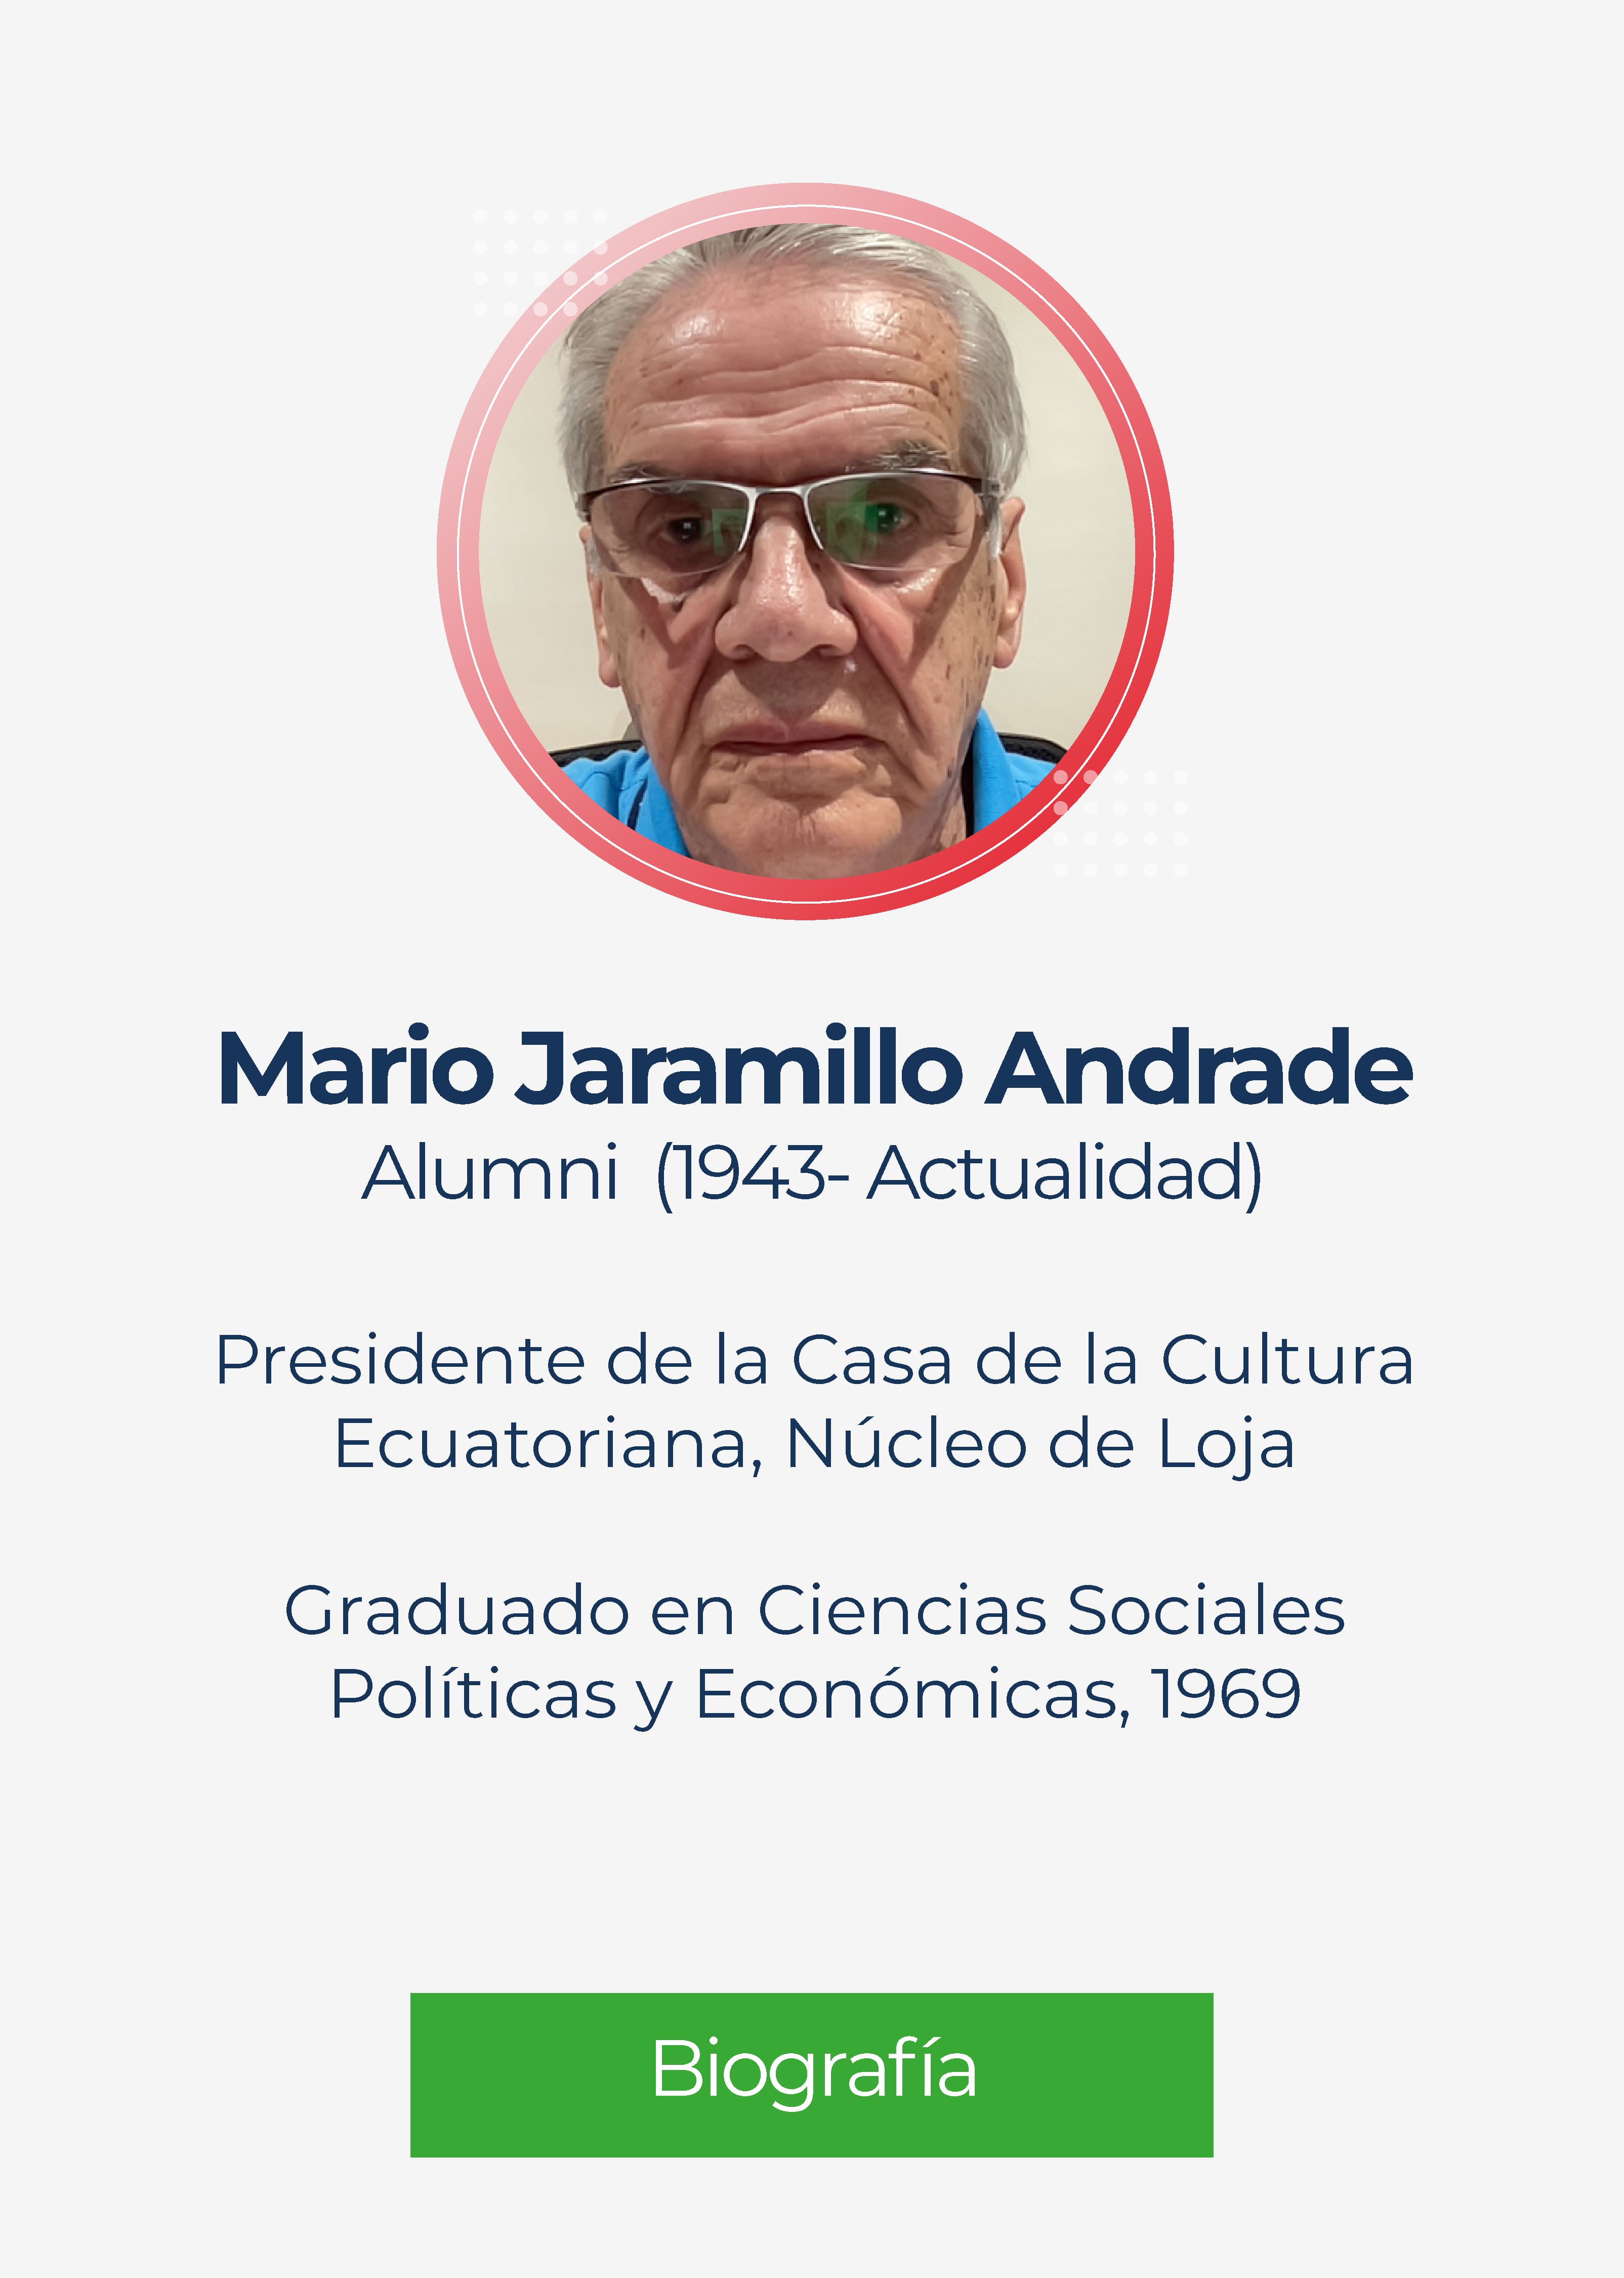 Mario Jaramillo Andrade